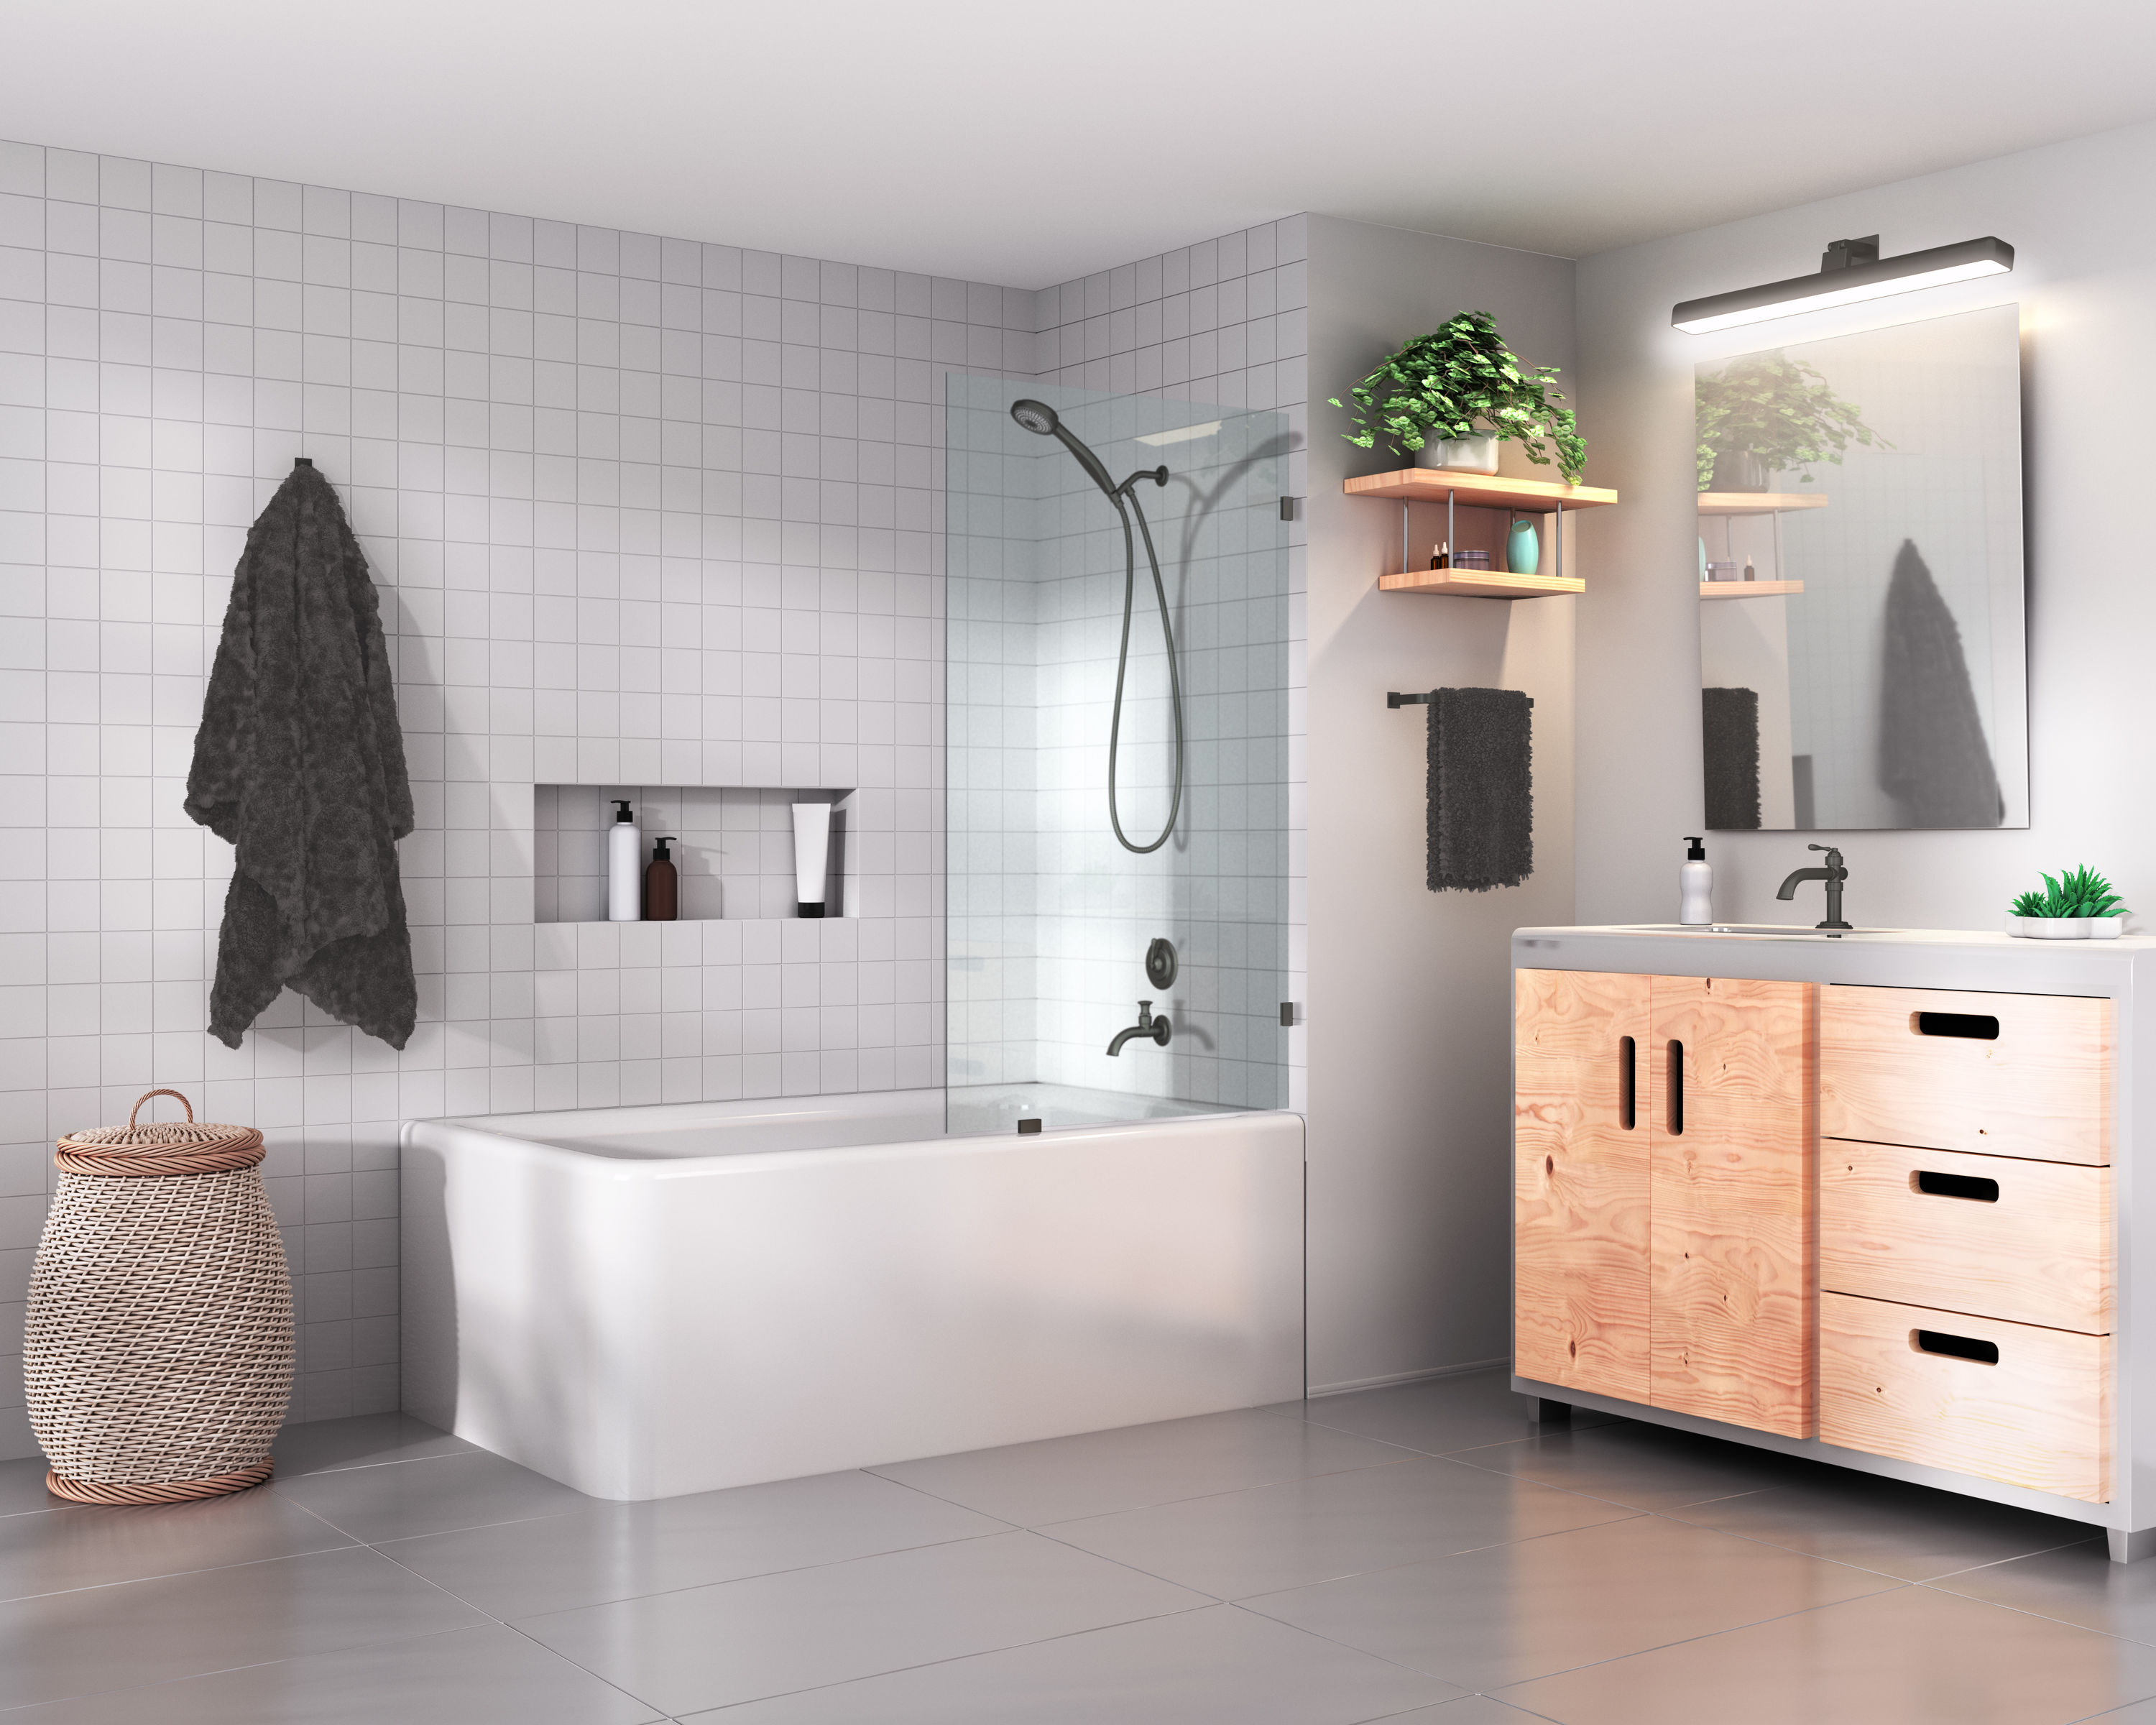 Wholesale Simply Home 3pc Bathroom Set- Aqua AQUA SKY